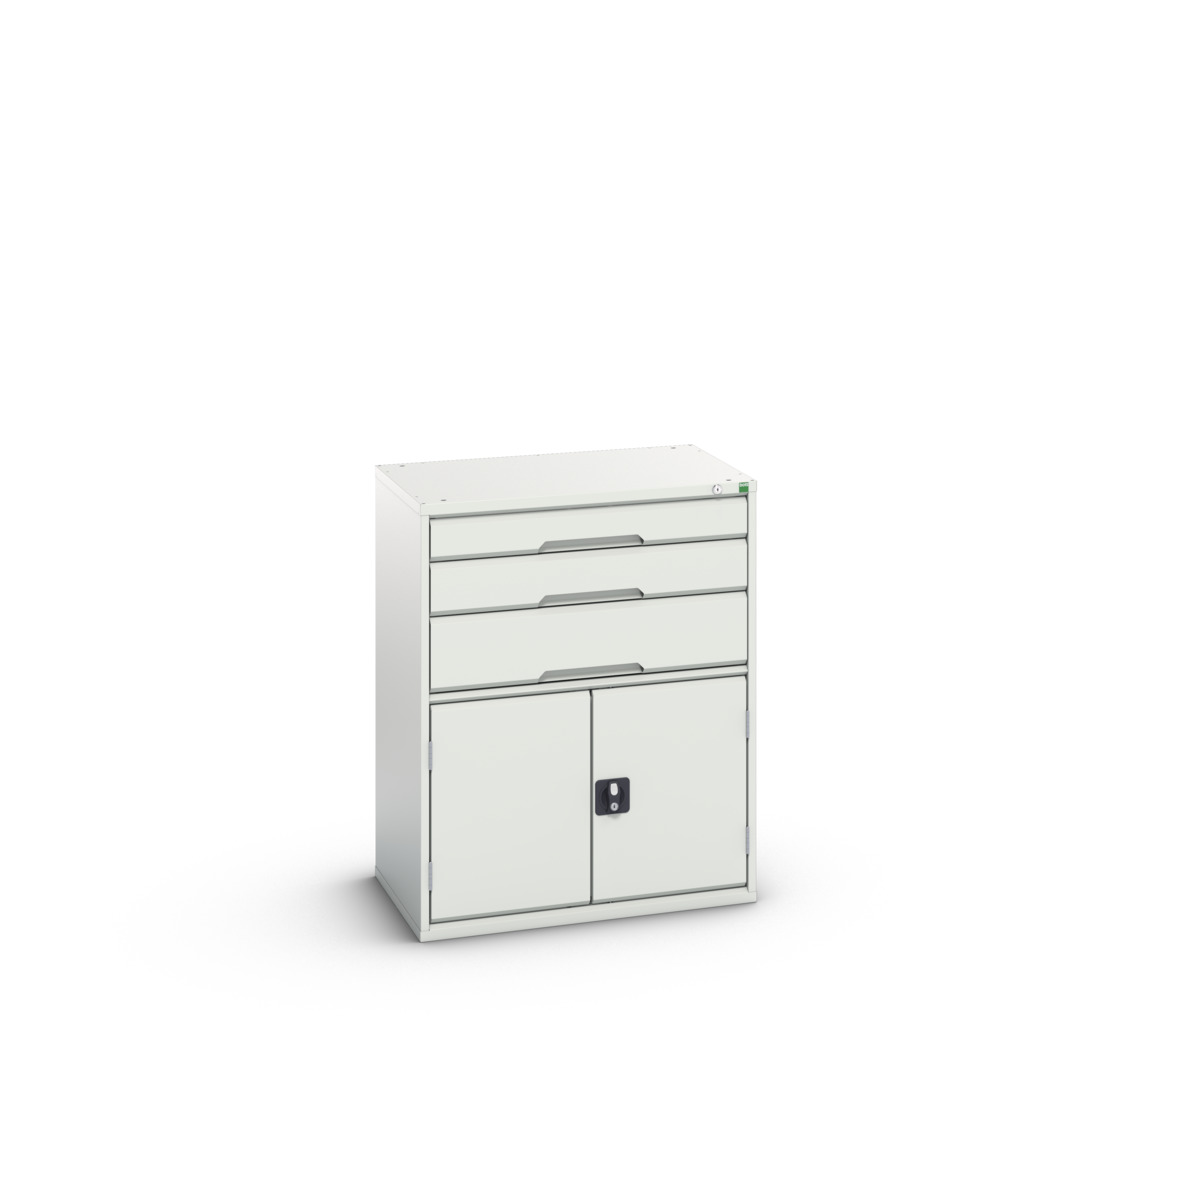 16925161.16 - verso drawer-door cabinet